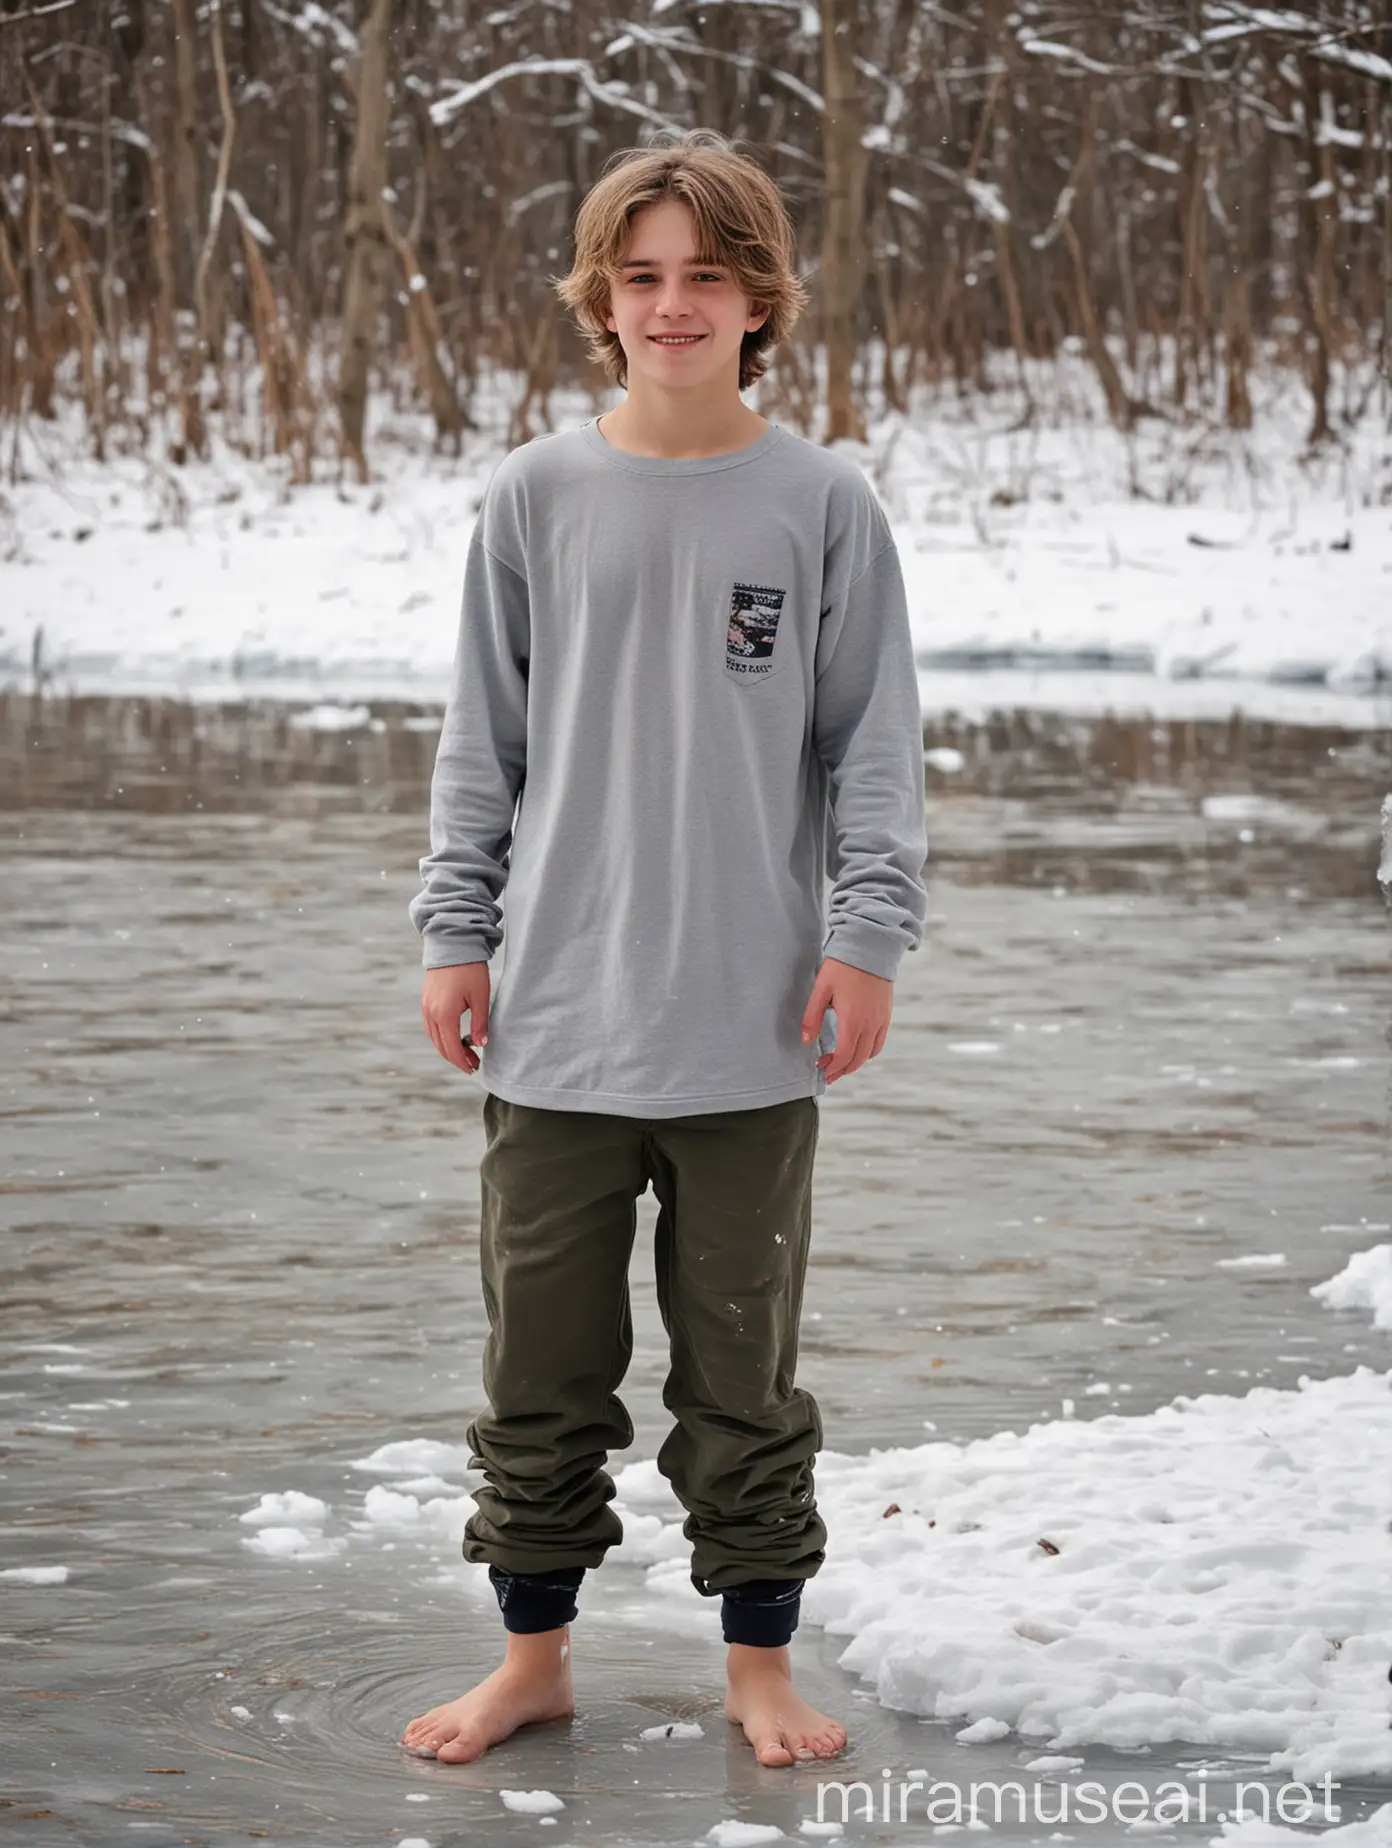 Happy Barefoot Teenager Enjoying Winter Fun on Frozen Lake